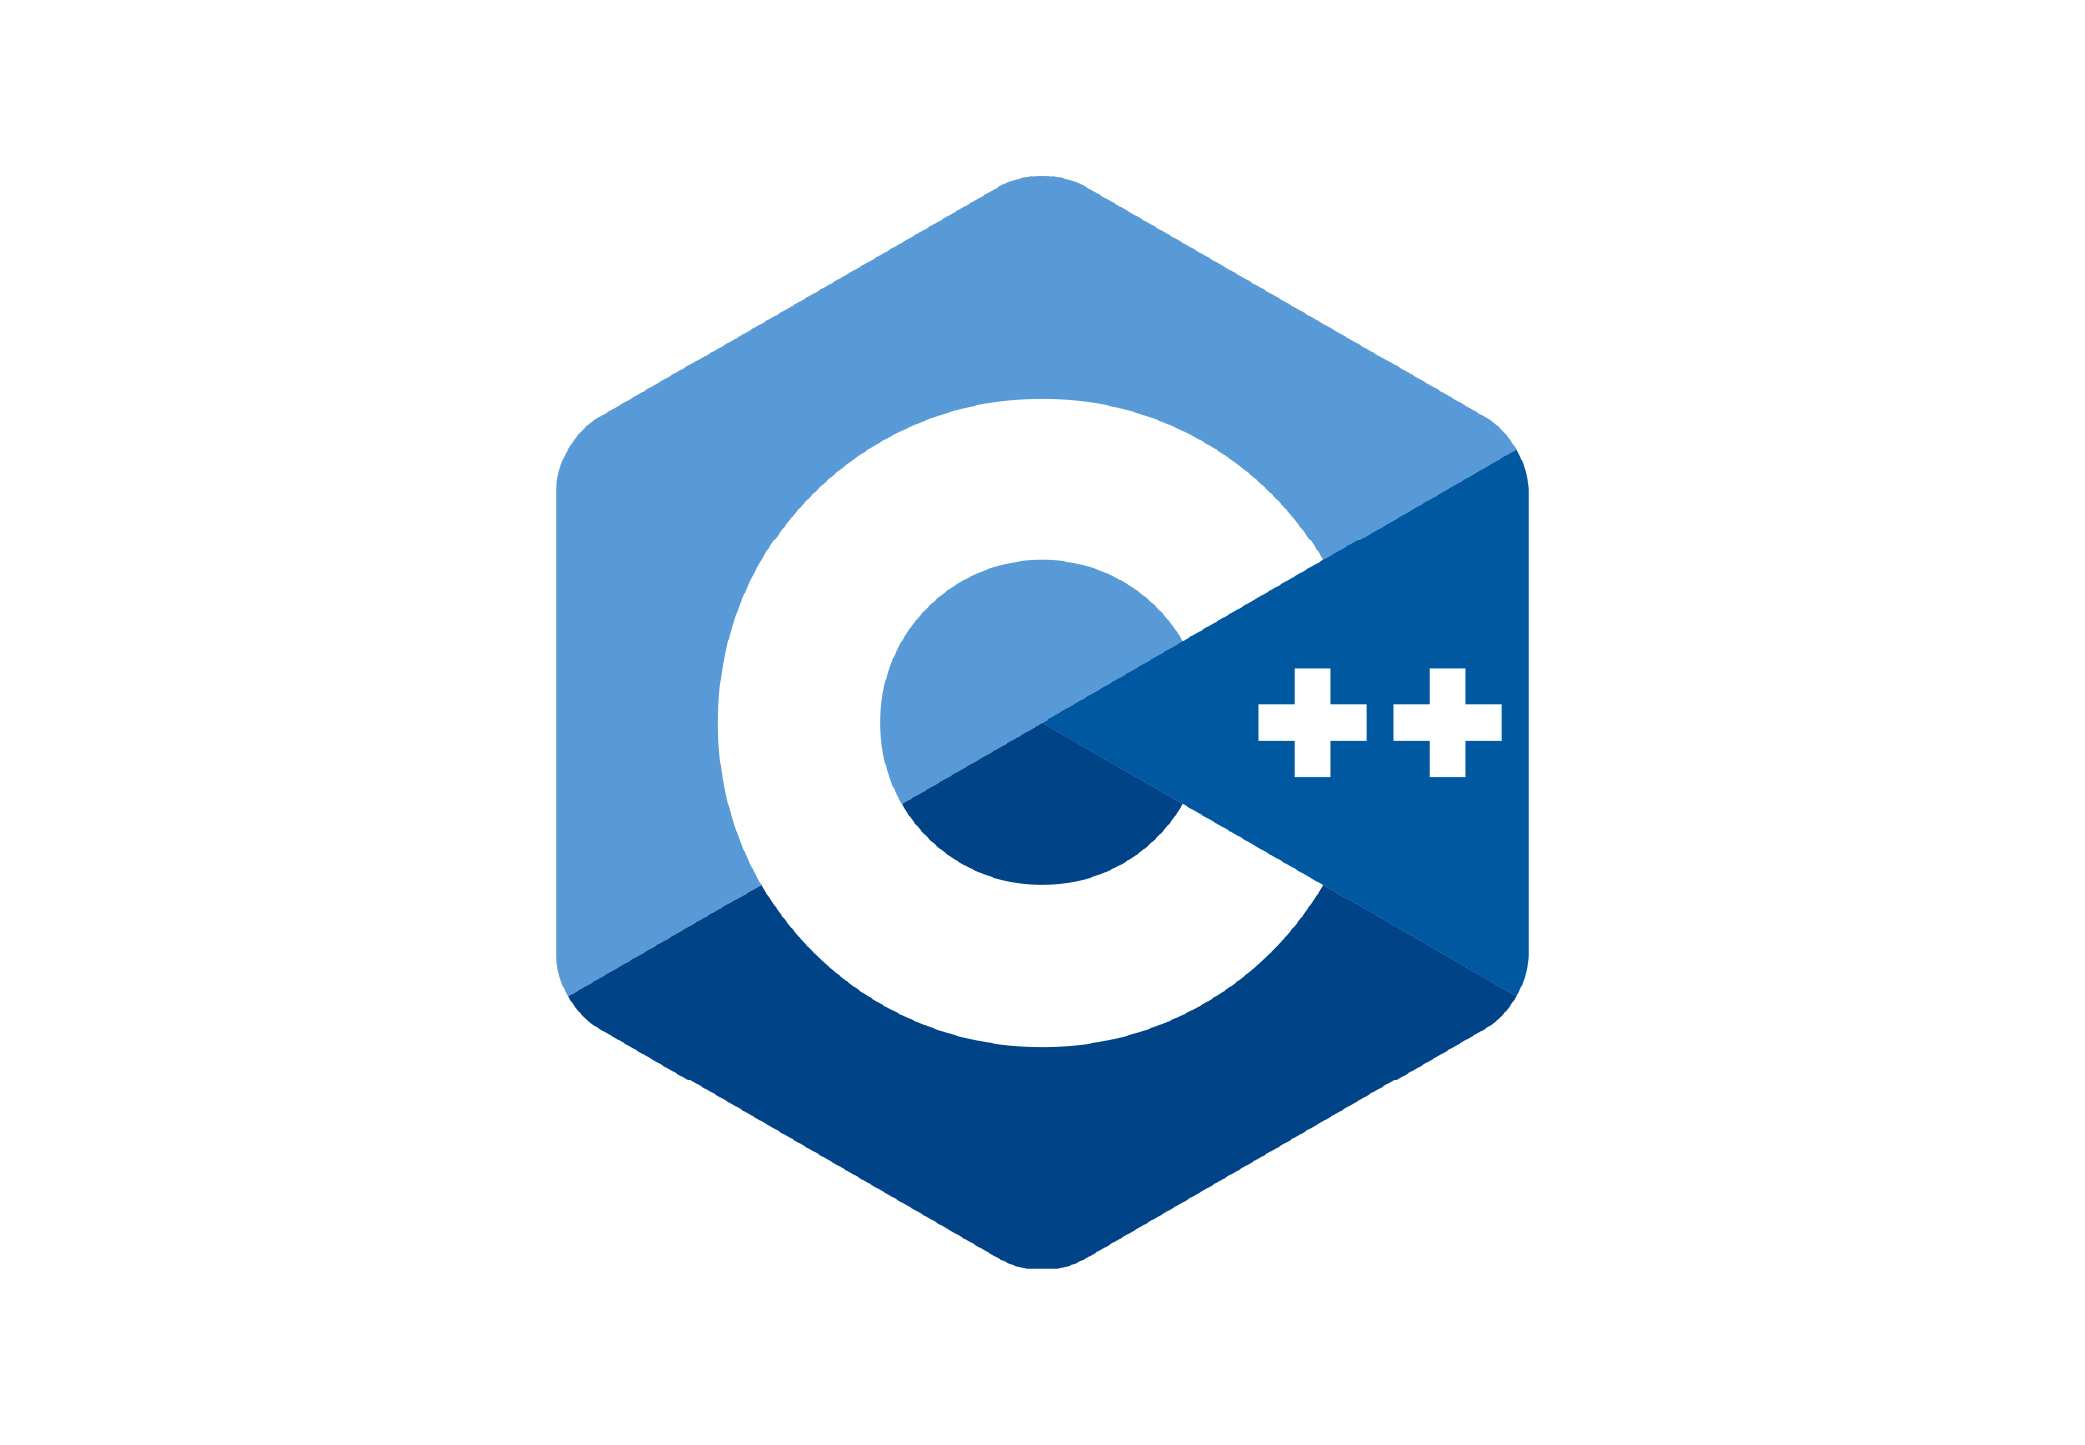 C++ language logo